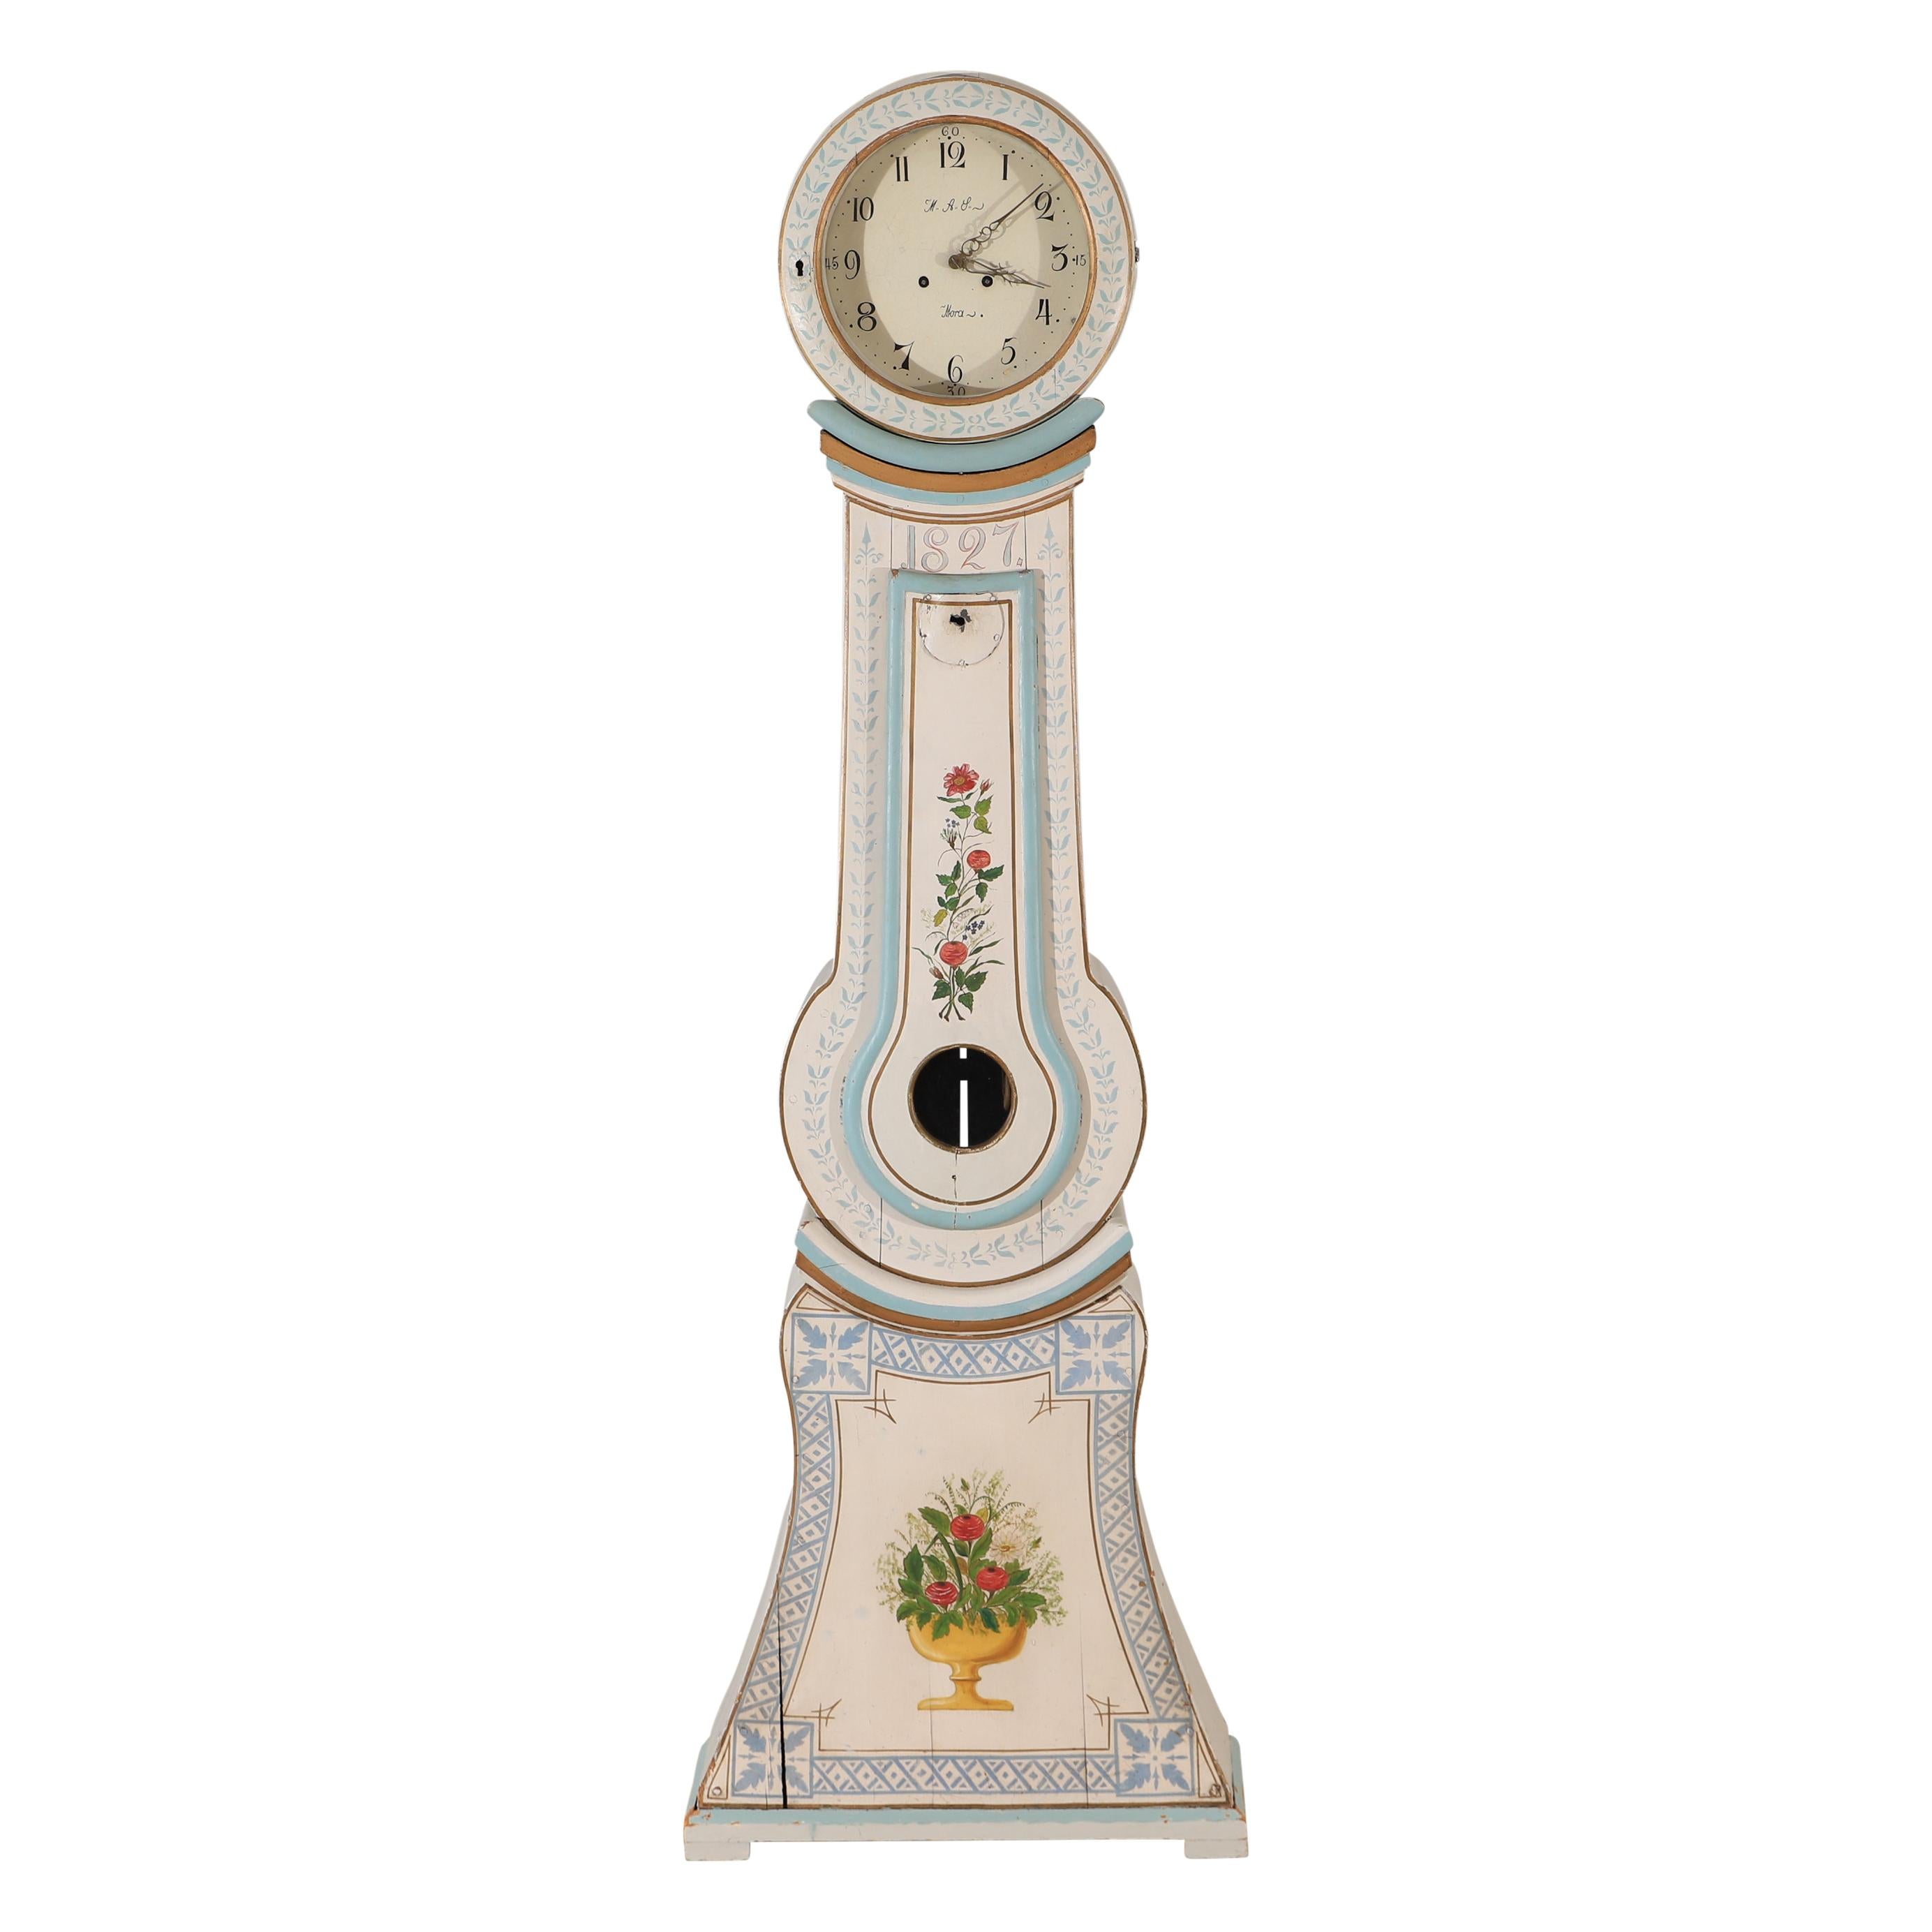 Ancienne horloge suédoise Mora antiques datant de 1827 avec des détails floraux peints décoratifs. Face détaillée avec les initiales de l'horloger AAL et Mora. Mécanisme original avec poids et pendule. Non testé en fonction. 
Mesures : Largeur :